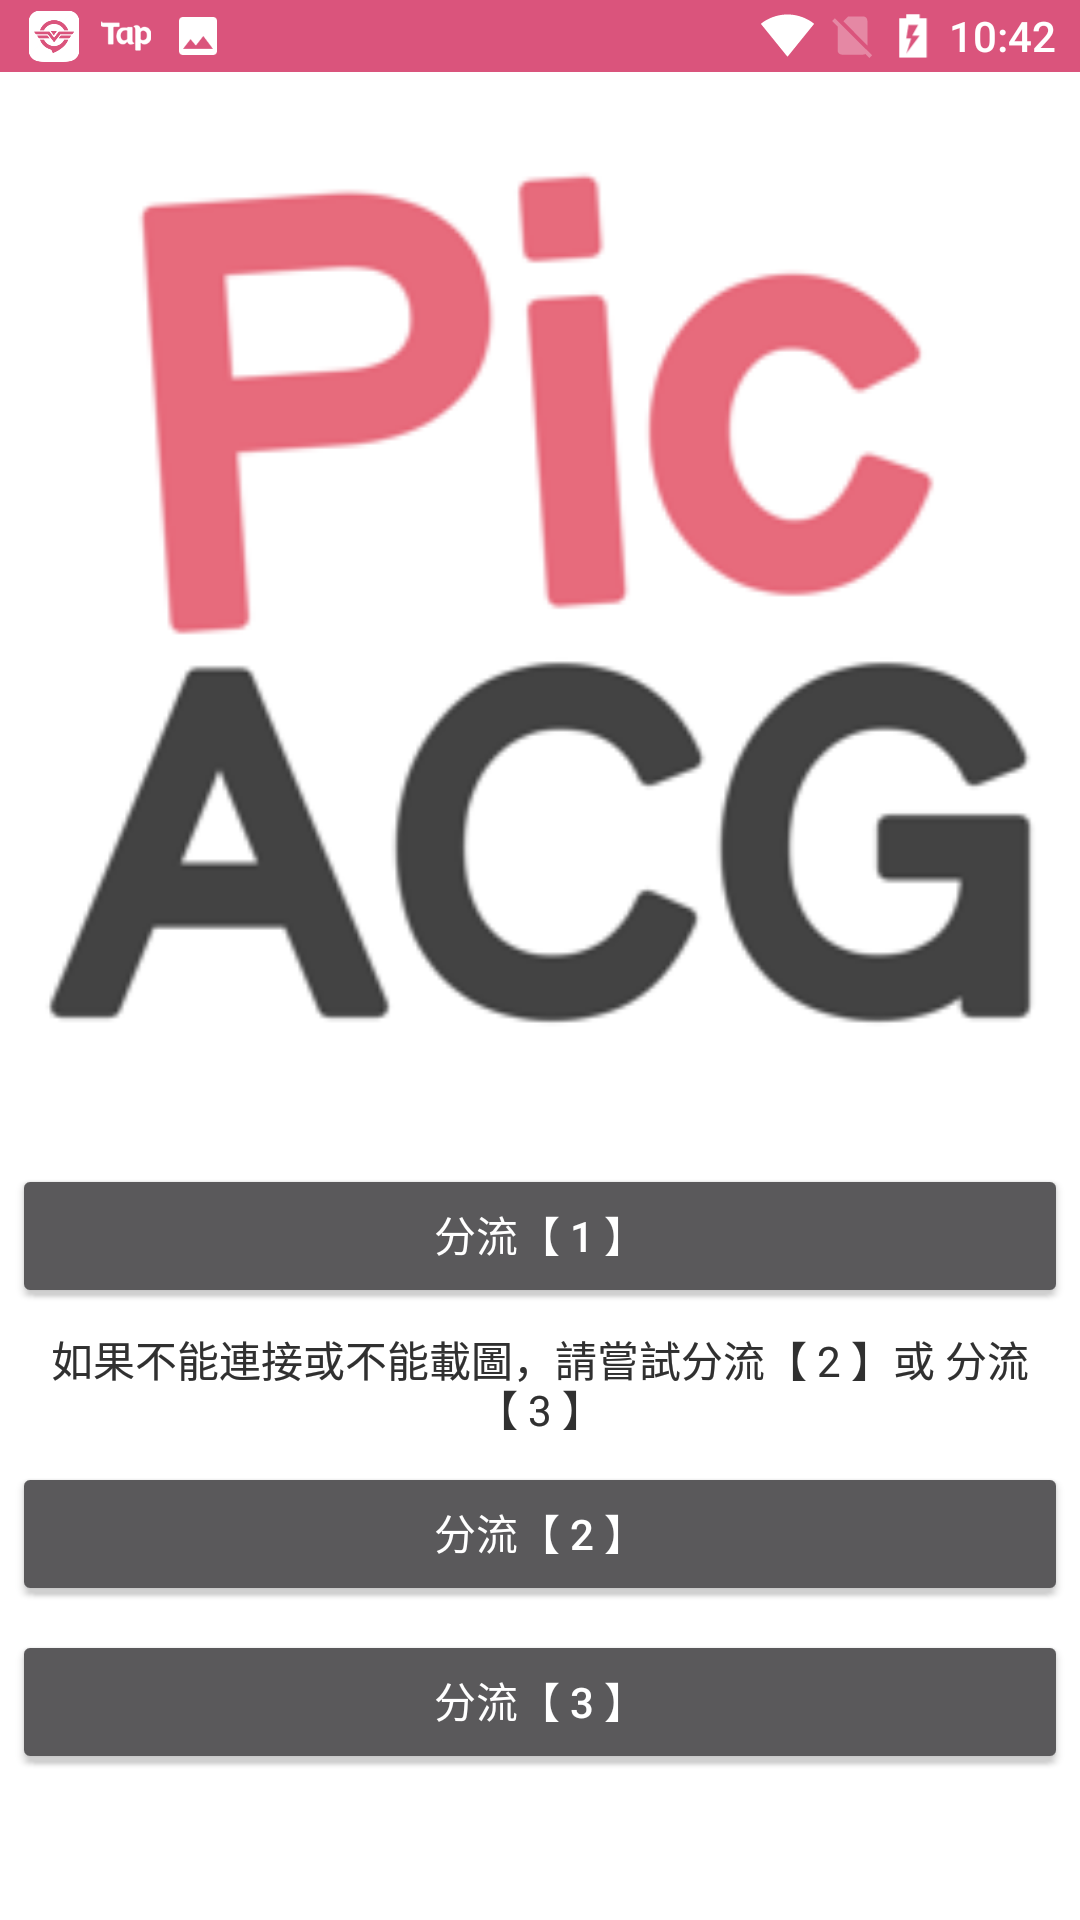 picacg 官方版手机软件app截图